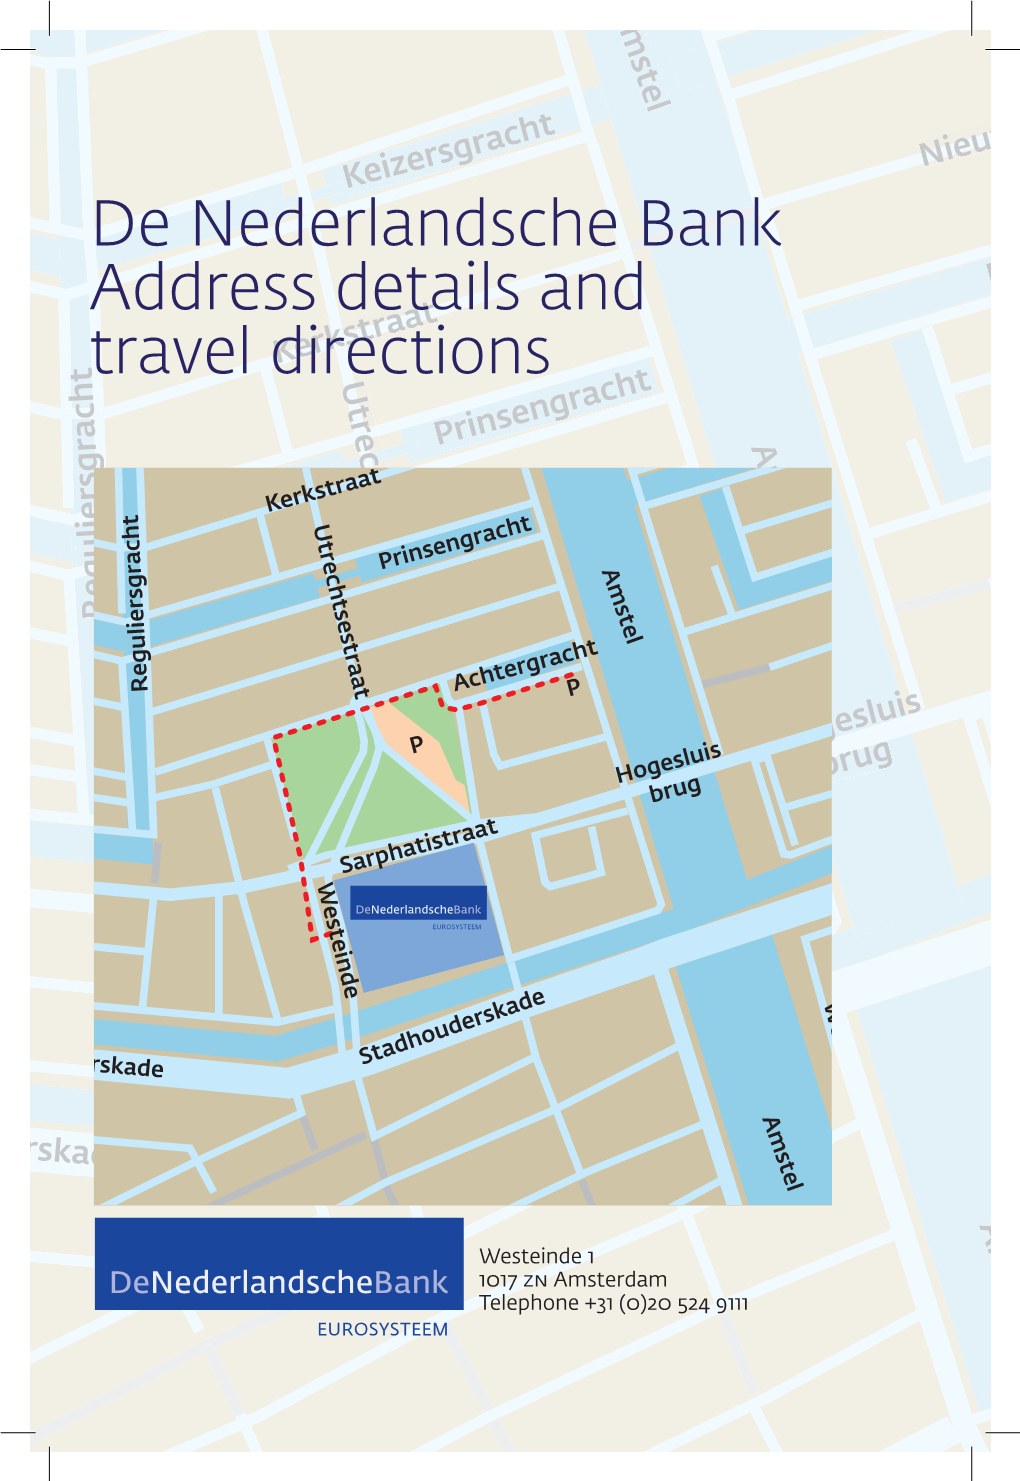 De Nederlandsche Bank Address Details and Travel Directions